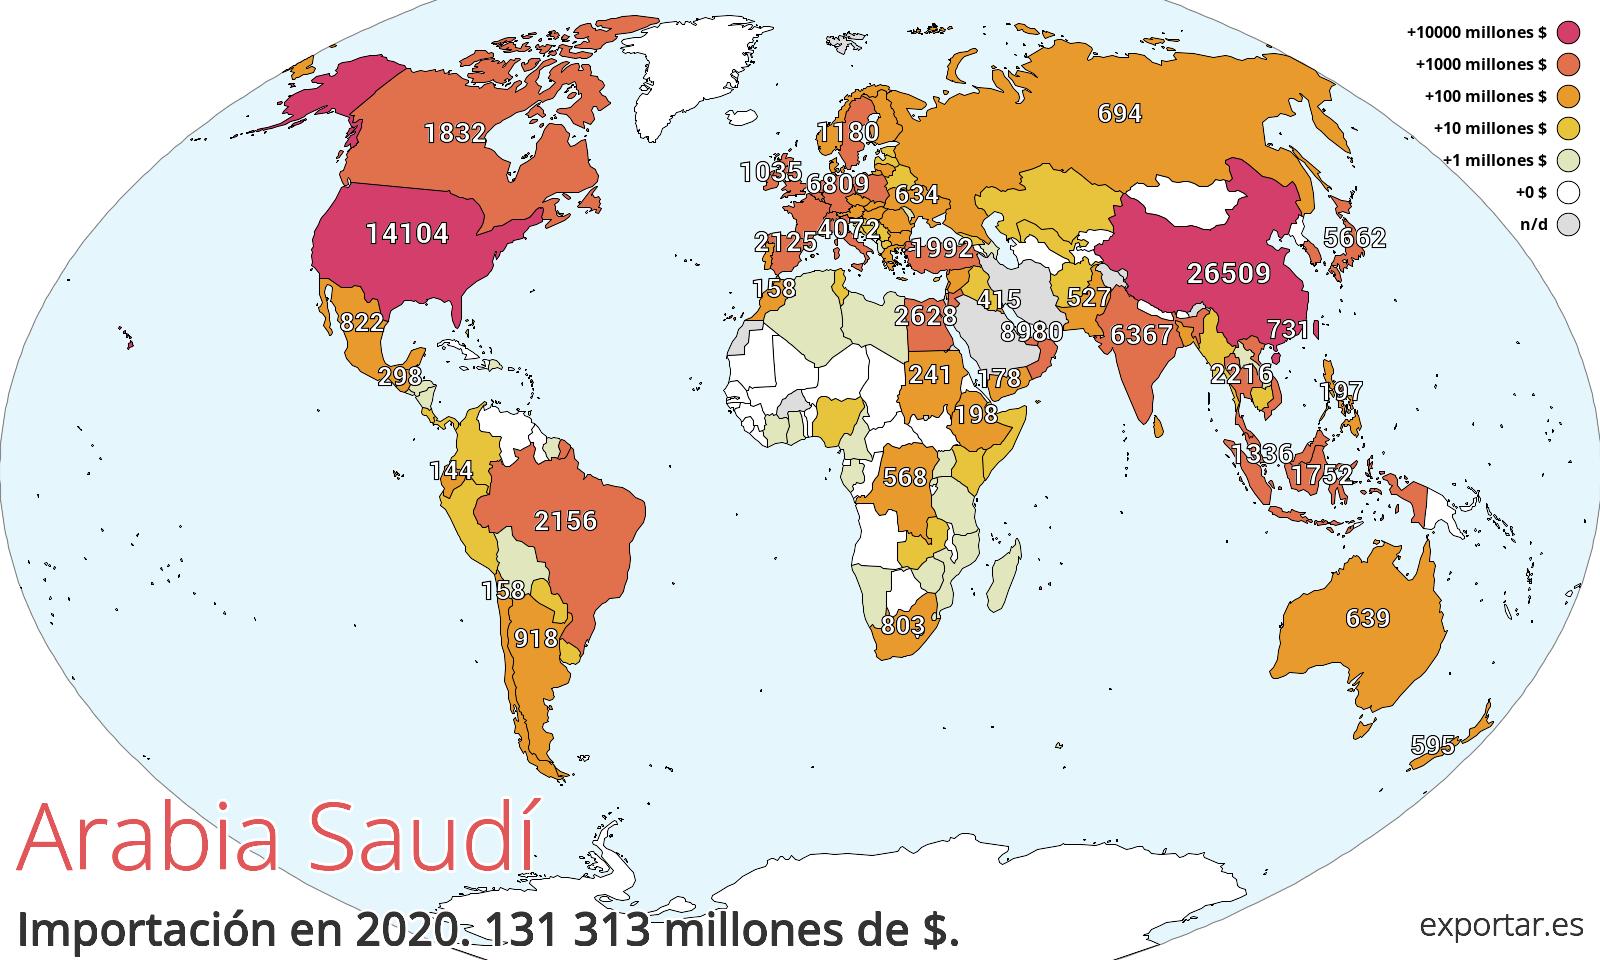 Mapa de importación de Arabia Saudí en 2020.